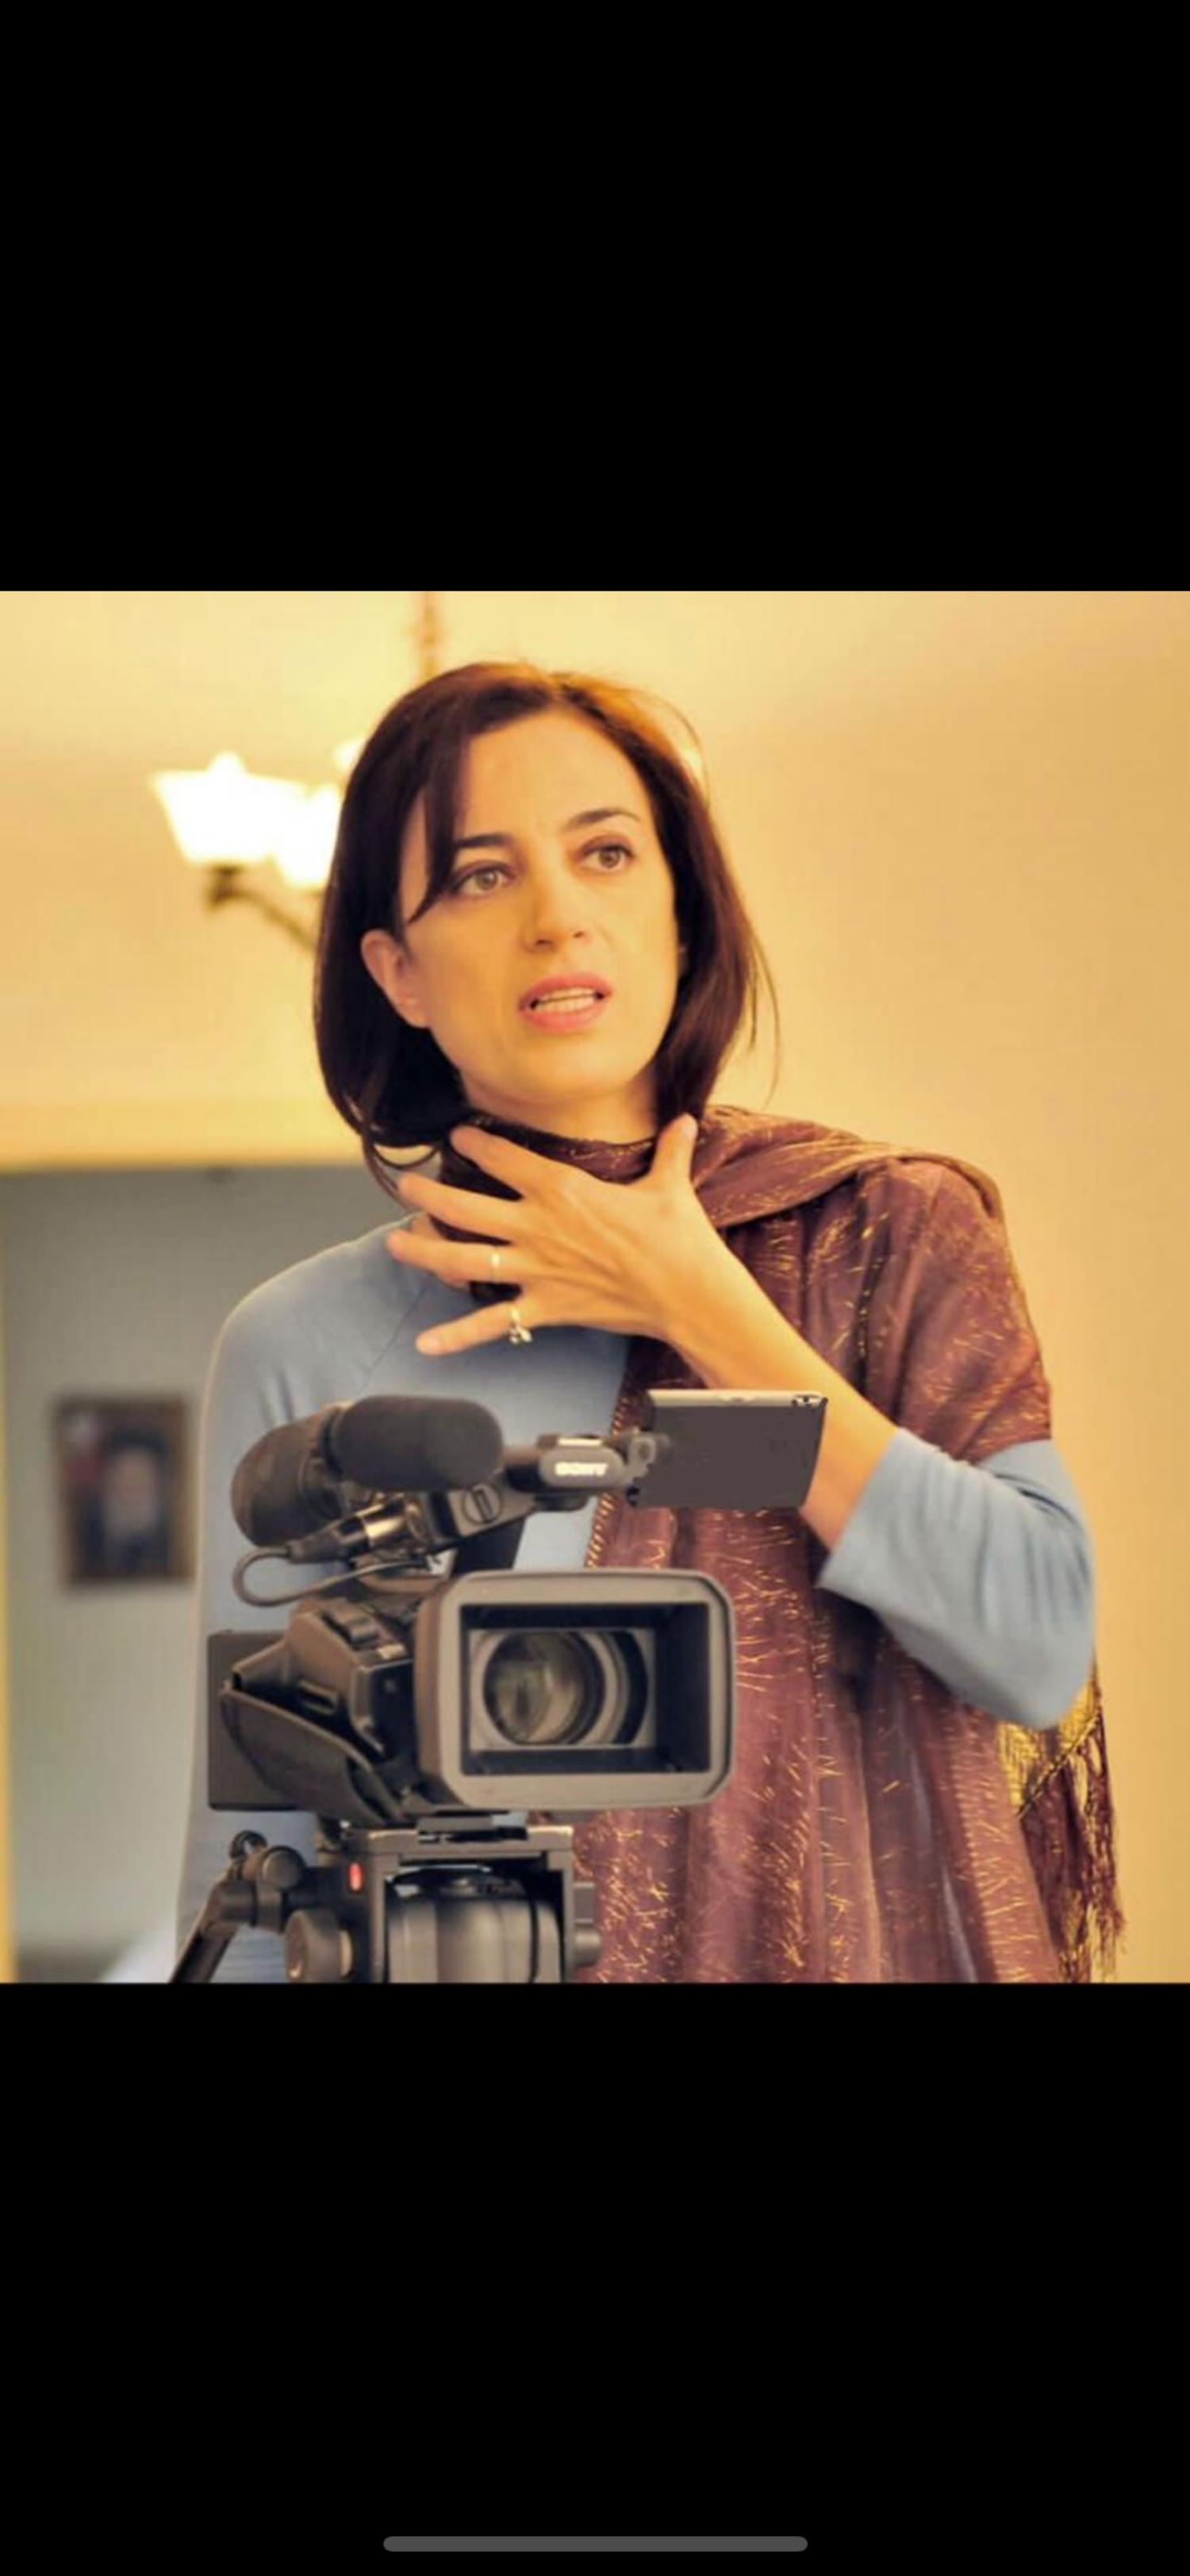 المخرجة اللبنانية كارمن لبكي تهتم بتاريخ شعوب مختلفة (حسابها الشخصي)